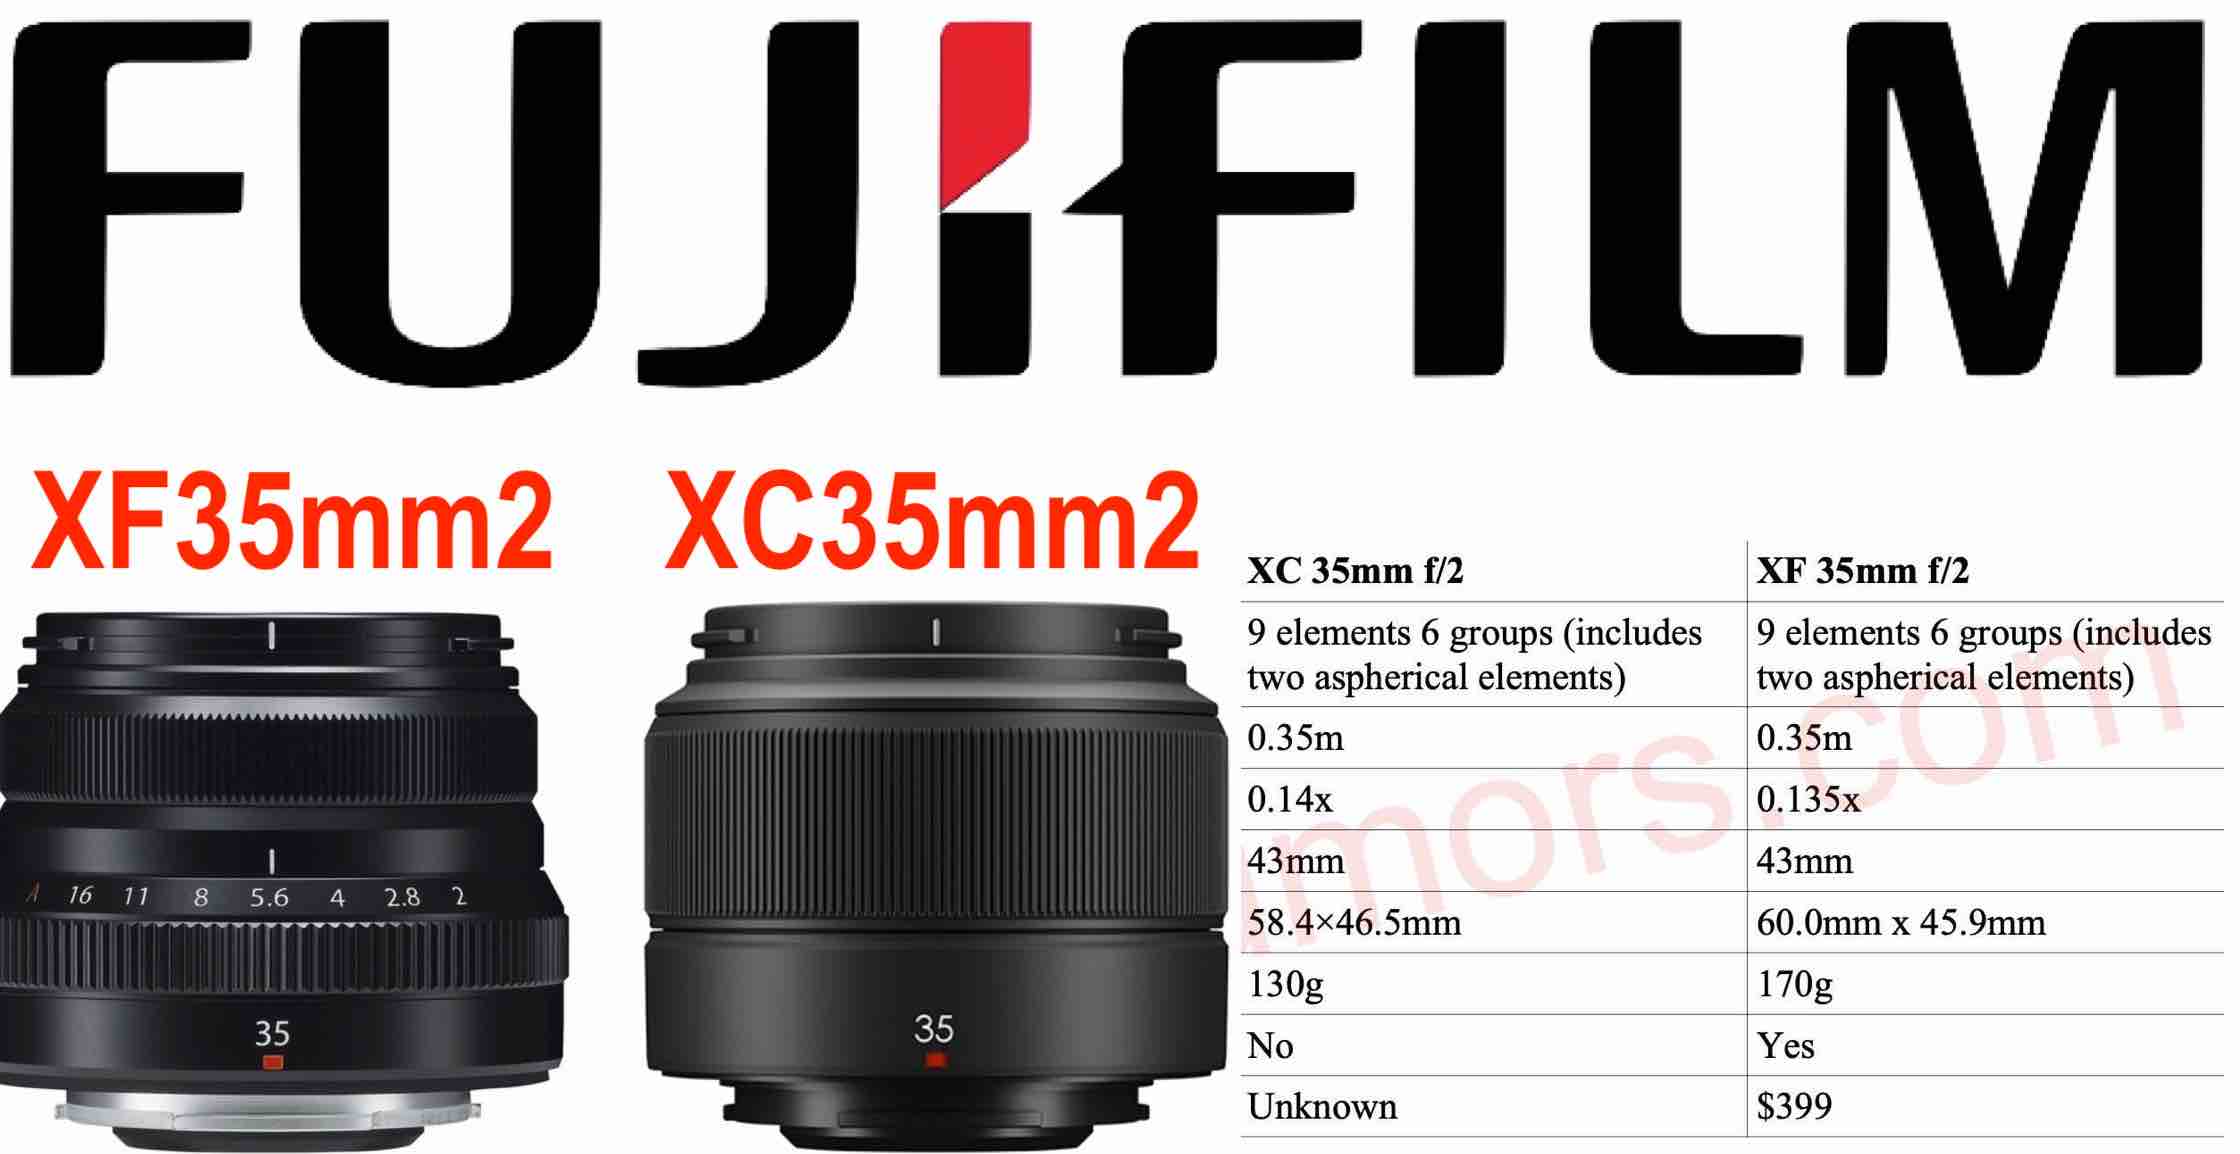 Fujinon XF 35mmF2 vs XC 35mmF2 Size and Specs Comparison - Same